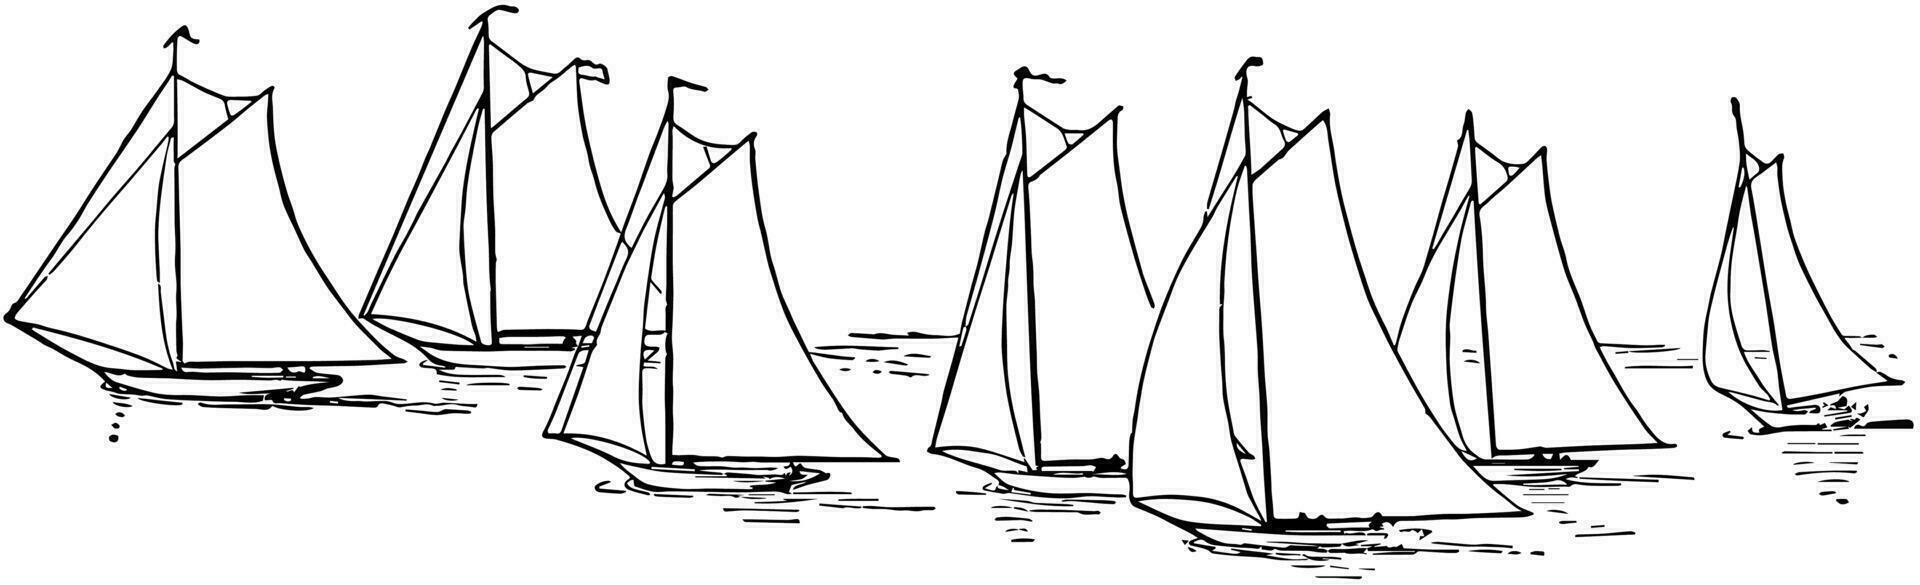 sju segelbåtar, årgång illustration vektor